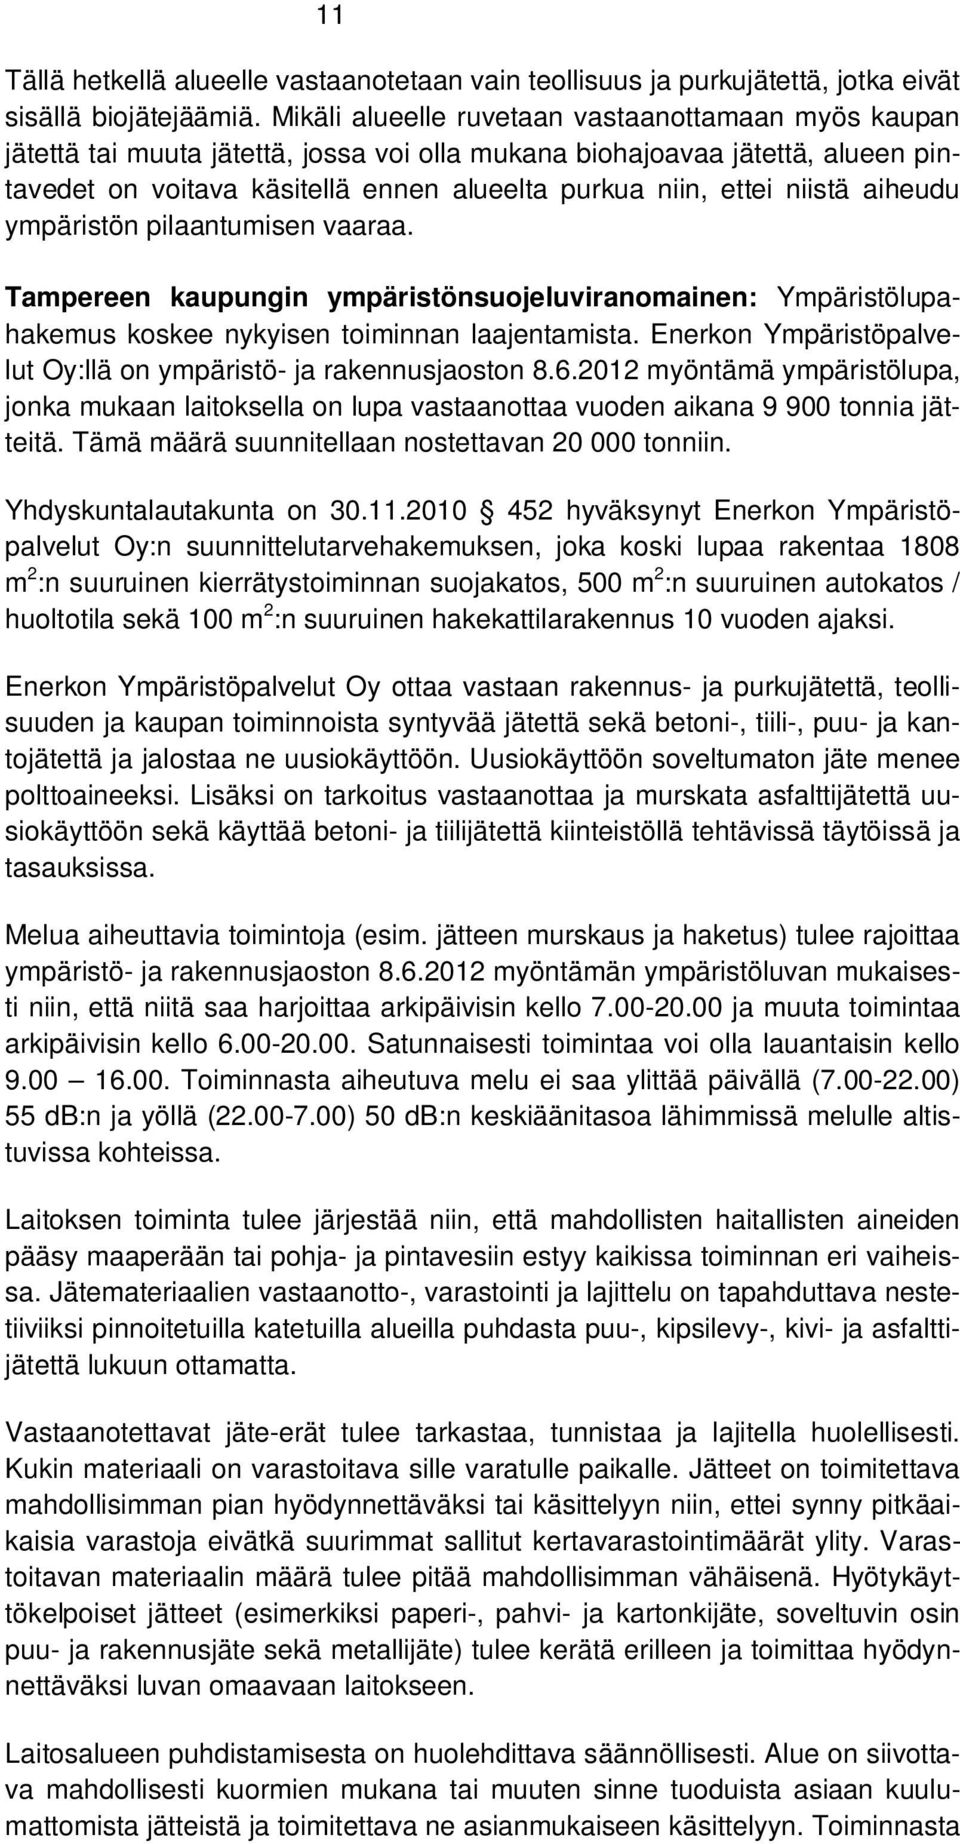 niistä aiheudu ympäristön pilaantumisen vaaraa. Tampereen kaupungin ympäristönsuojeluviranomainen: Ympäristölupahakemus koskee nykyisen toiminnan laajentamista.